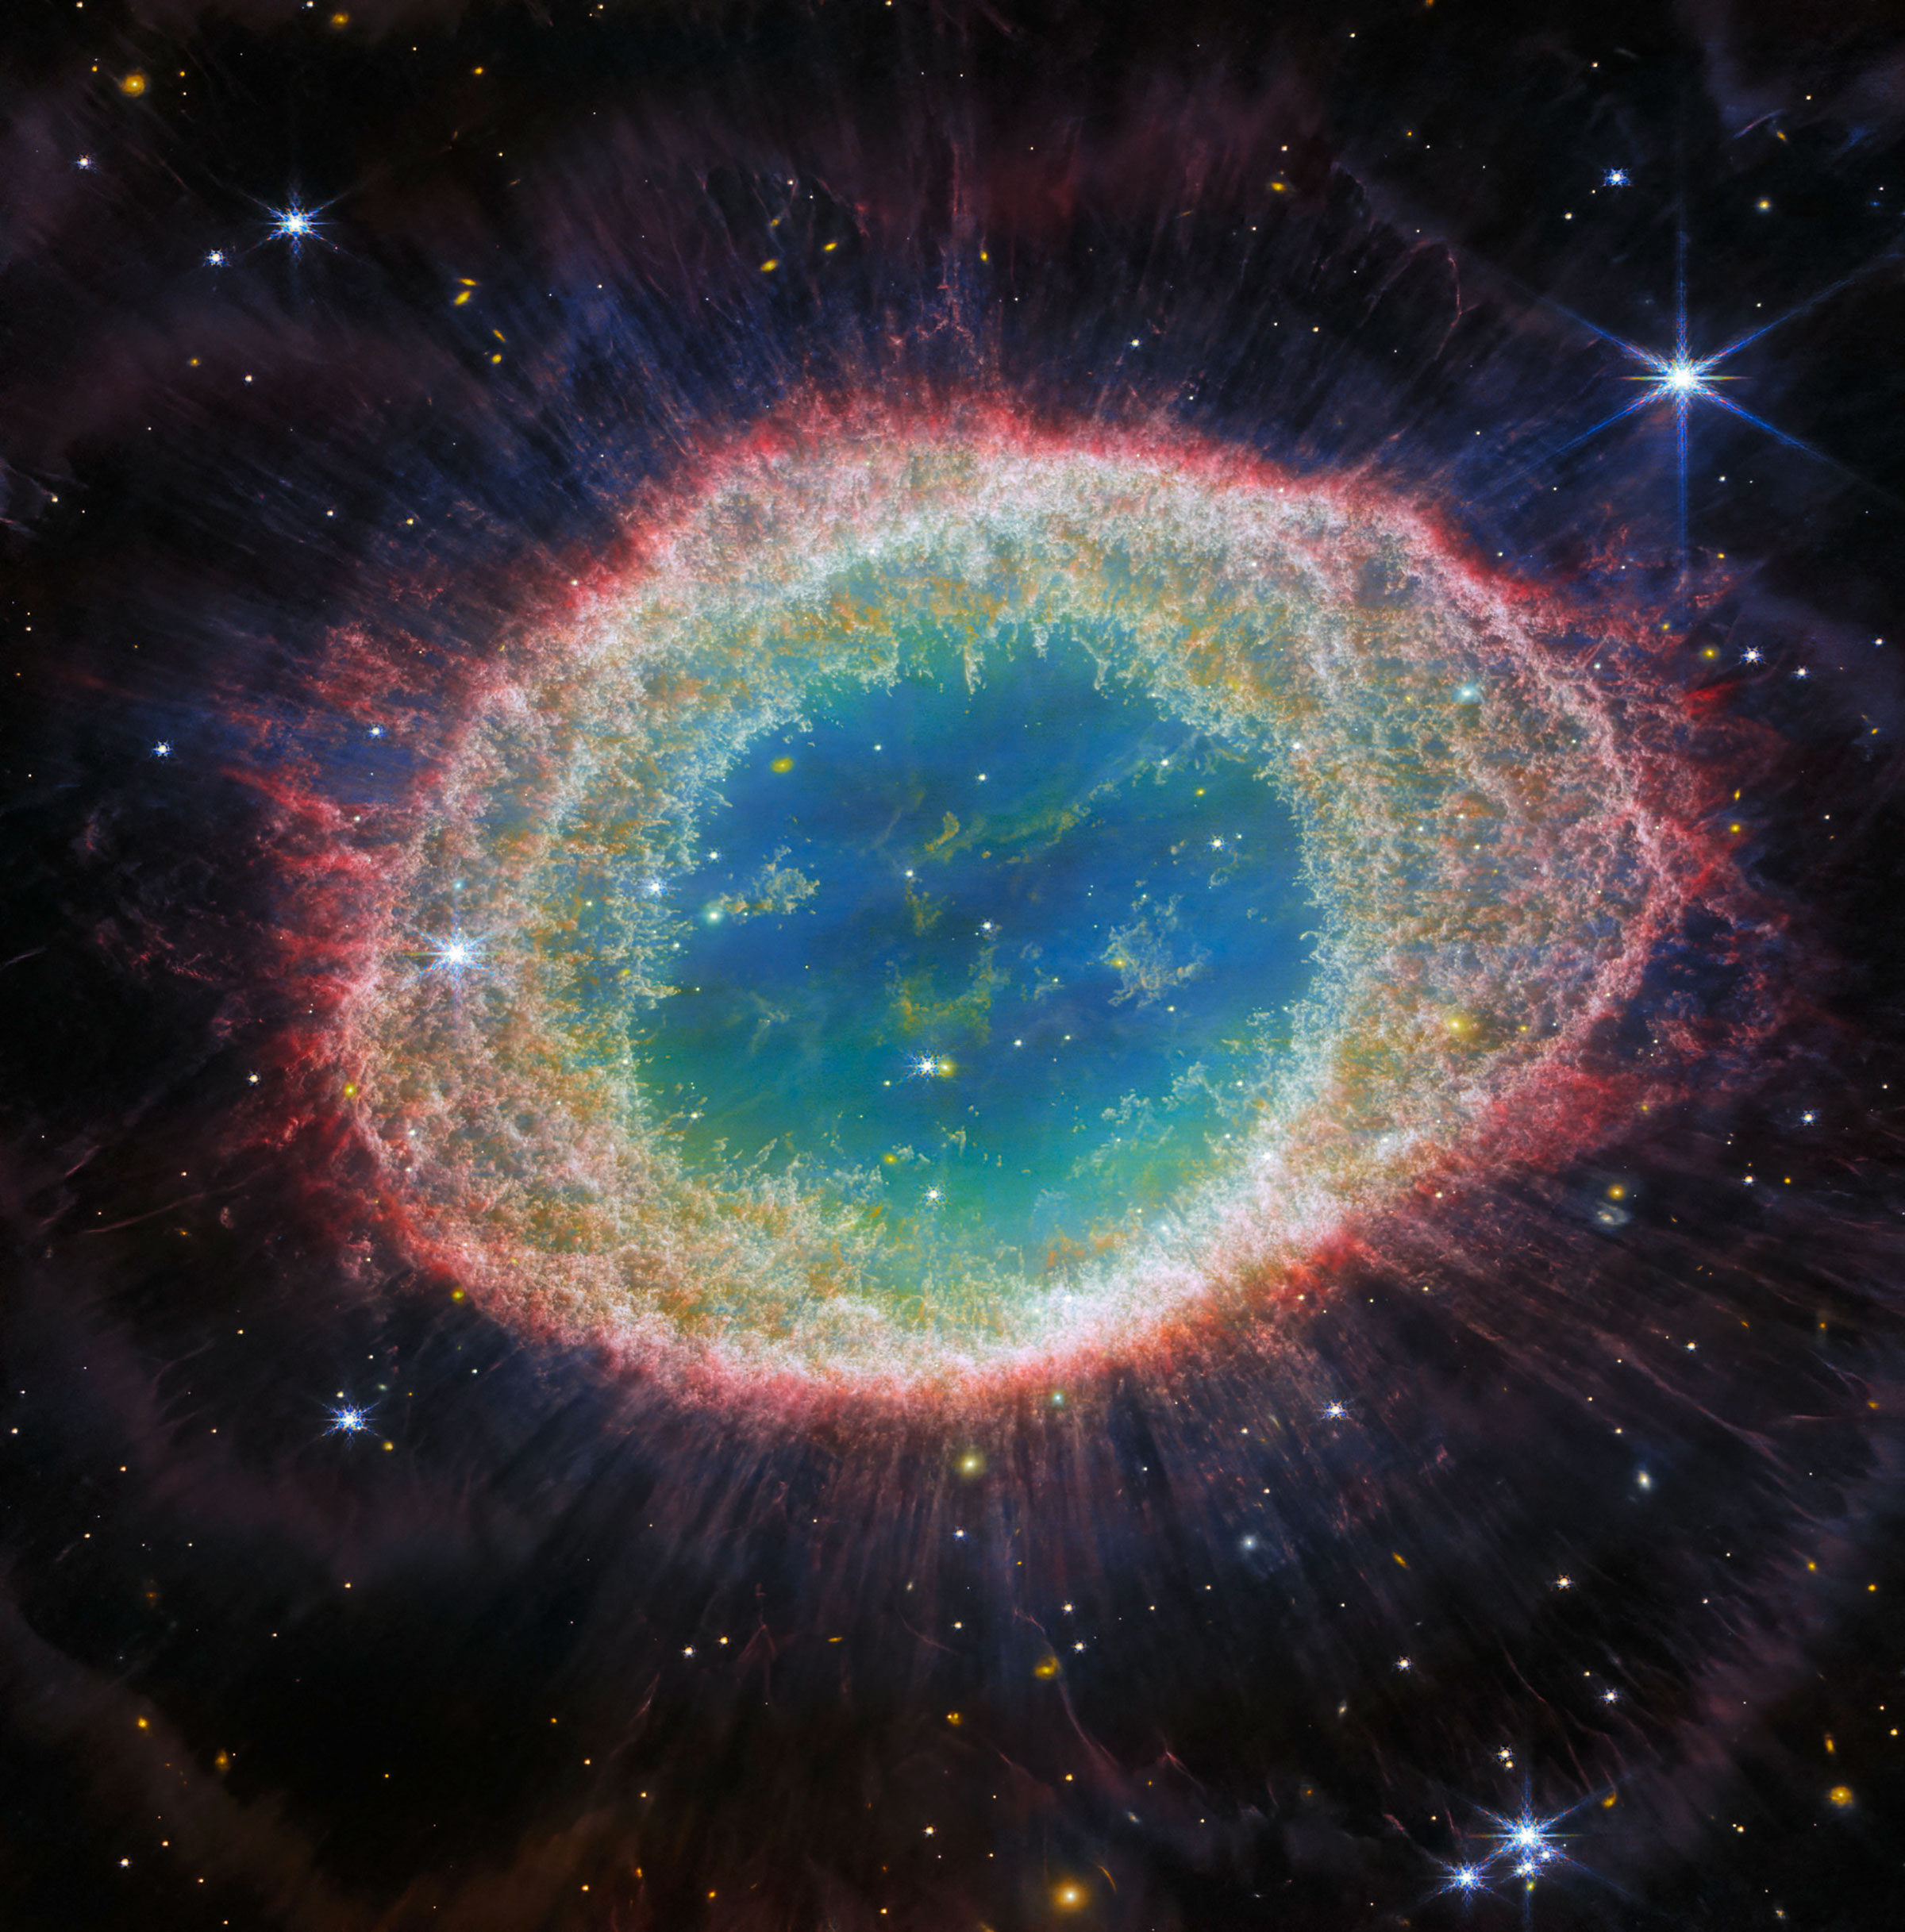 A visão infravermelha próxima da Nebulosa do Anel de Webb tem uma paleta de cores diferente.  Desta vez, a cavidade interna da nebulosa abriga tons de azul e verde, enquanto o anel detalhado transita entre tons de laranja nas regiões internas e rosa na região externa.  Estrelas ocupam a cena, com uma estrela particularmente proeminente com 8 pontas longas no canto superior direito.